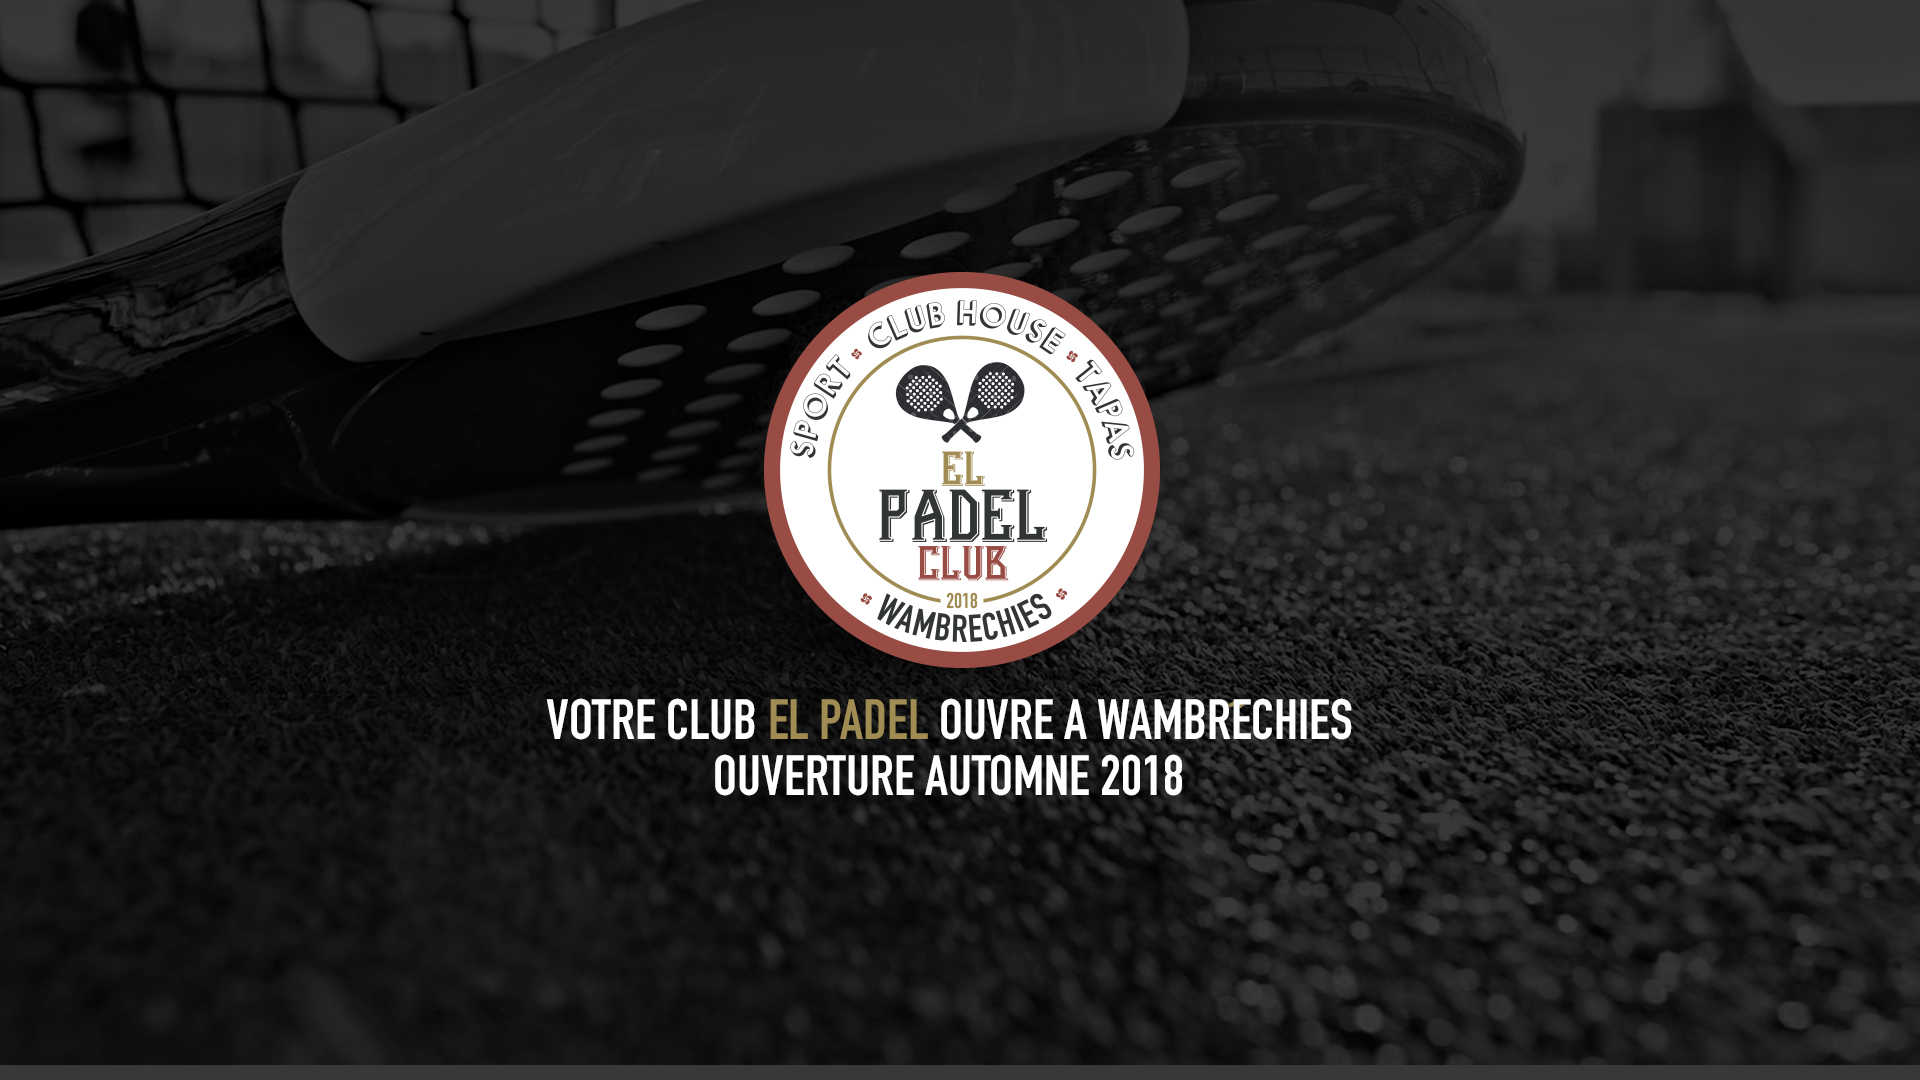 El Padel Club, el nou club de Lille